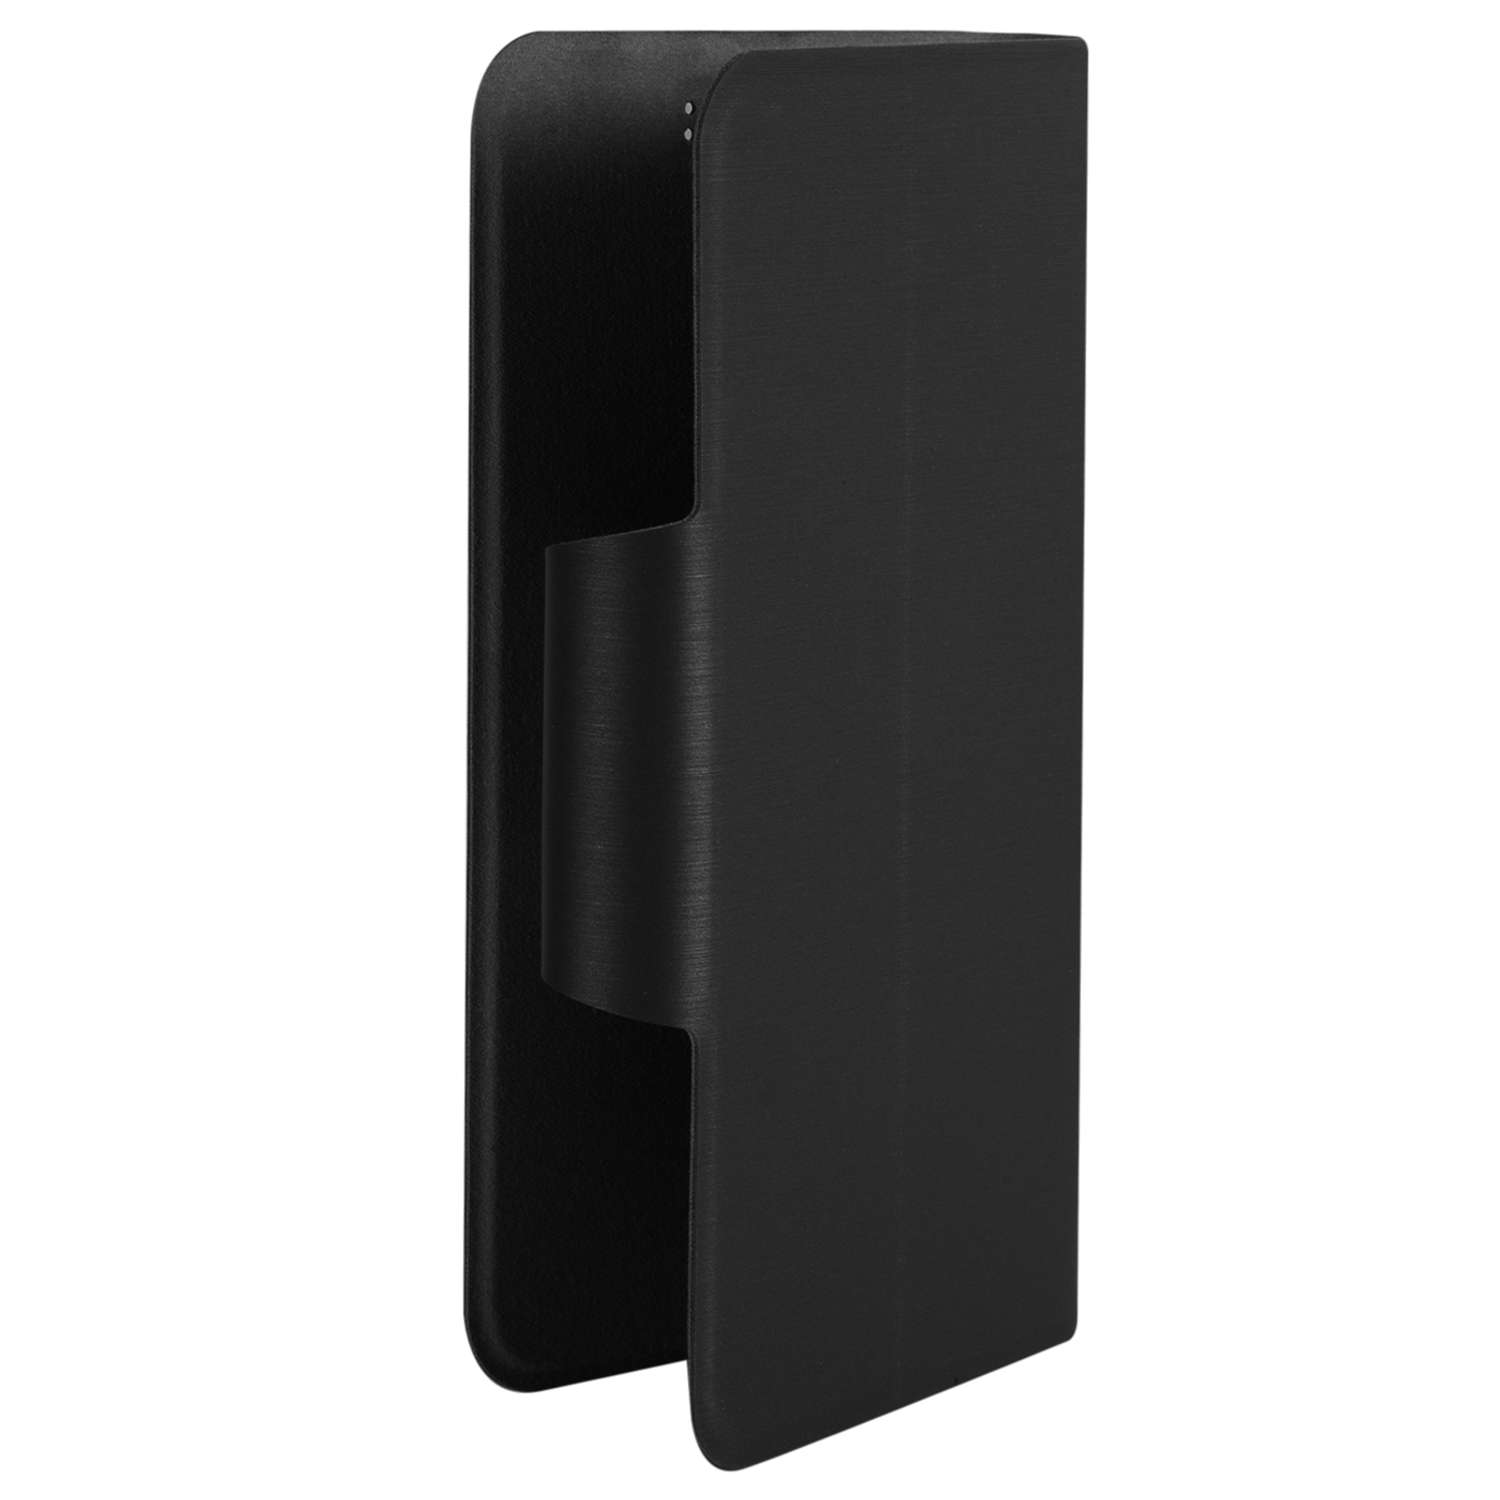 Чехол универсальный iBox UniMotion для телефонов 3.5-4.5 дюйма черный - фото 3